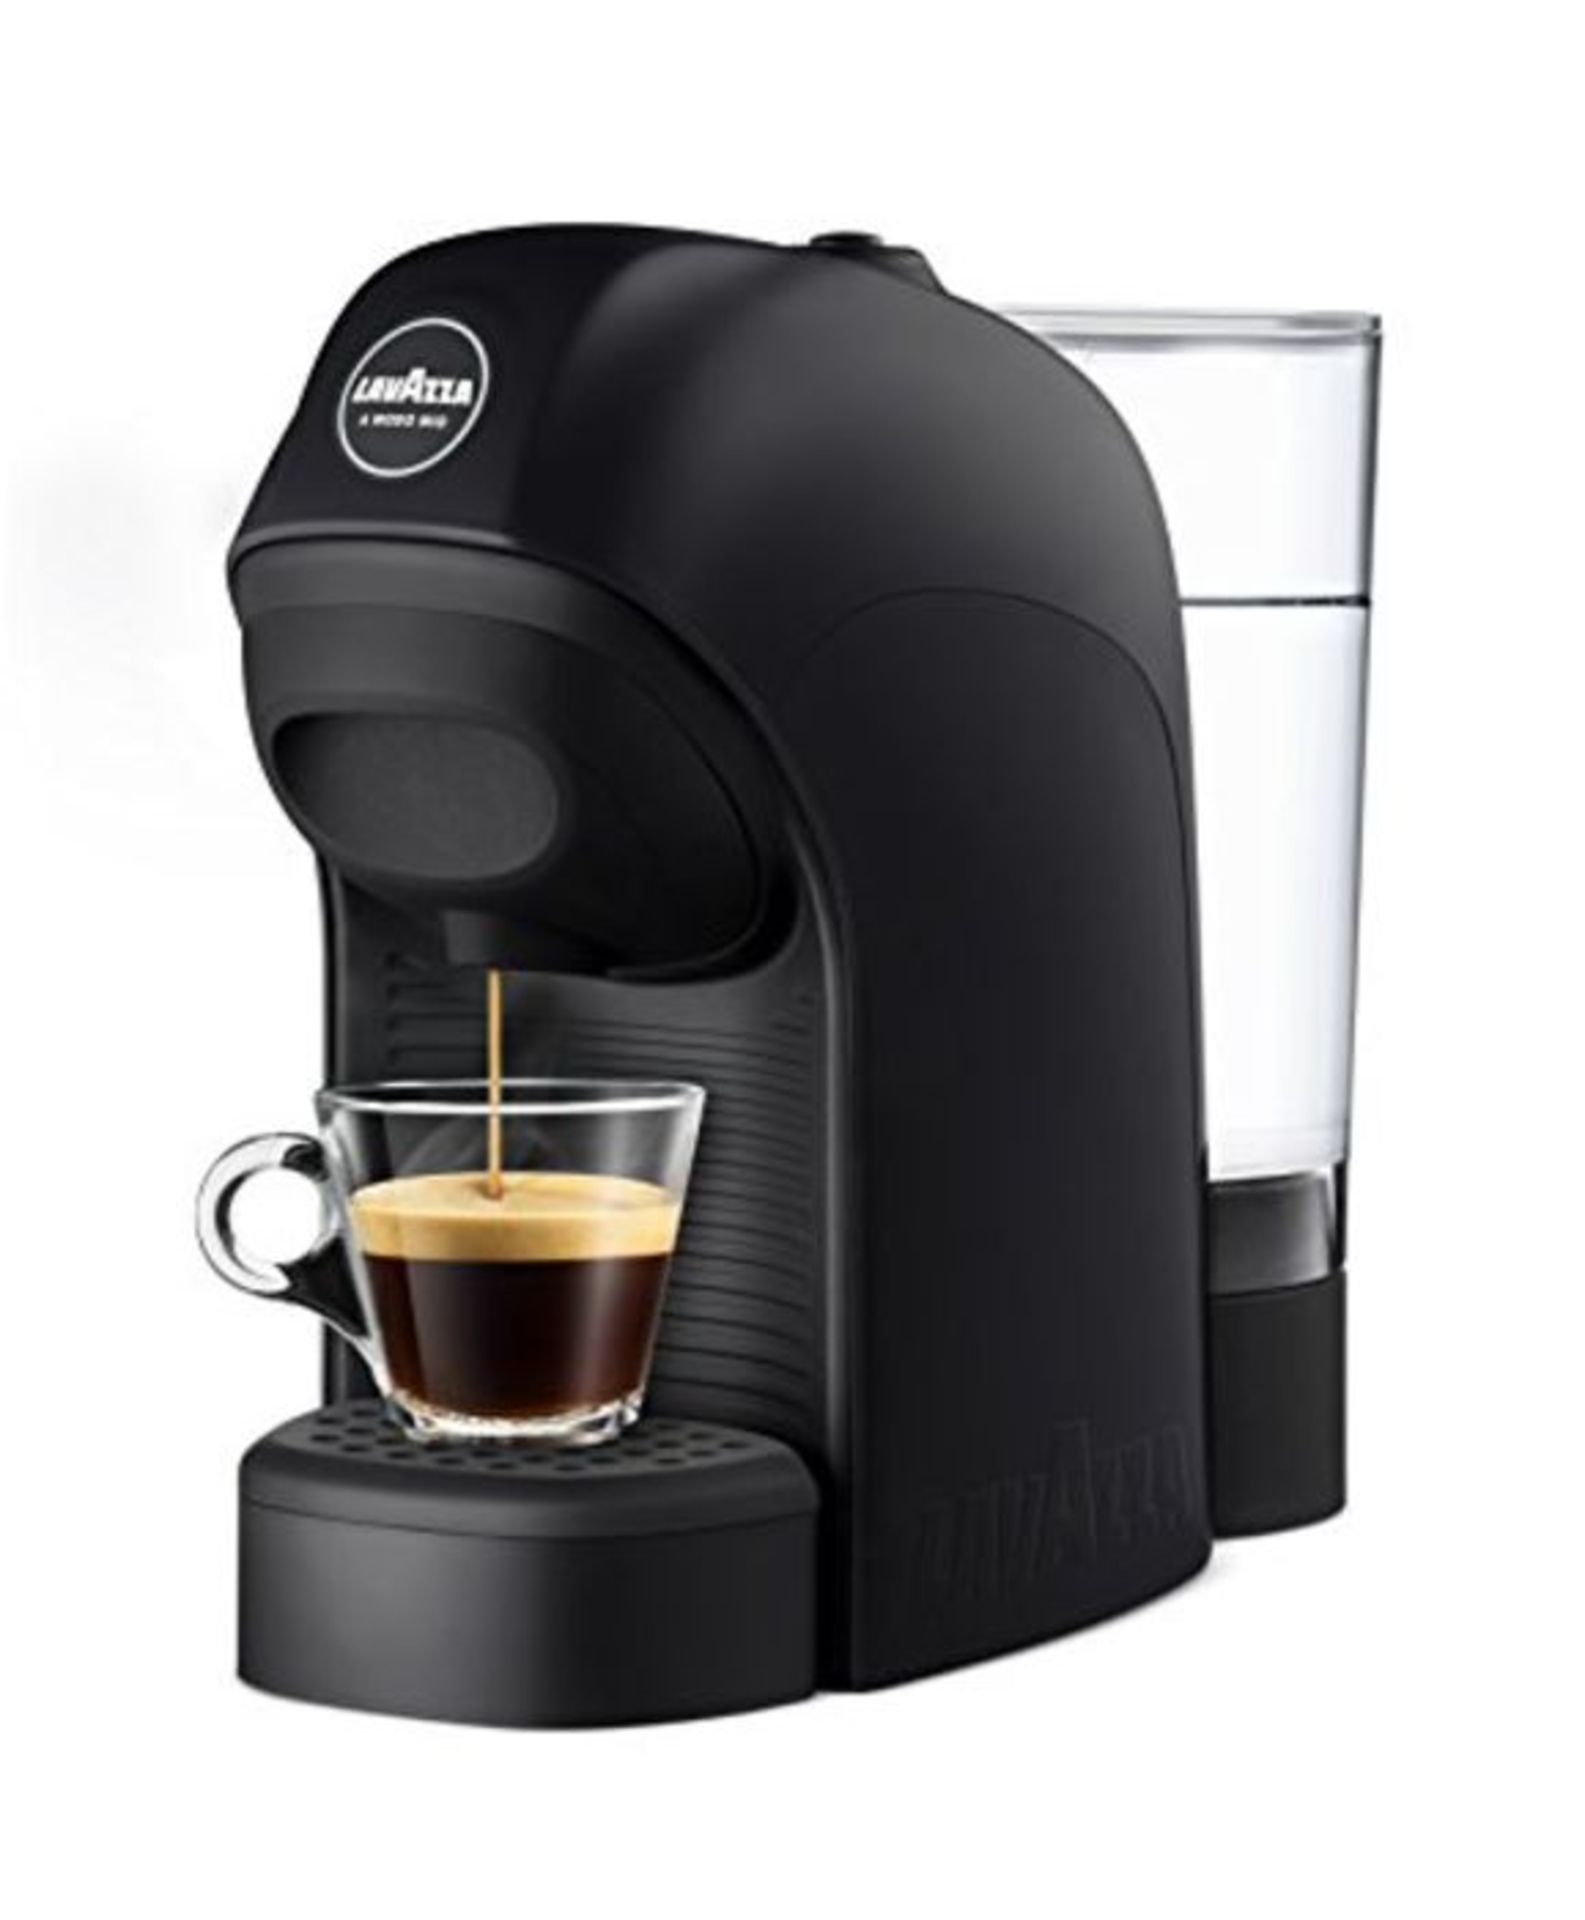 RRP £63.00 Lavazza LM800 Tiny Macchina per caffè con capsule 0,75 L Semi-automatica